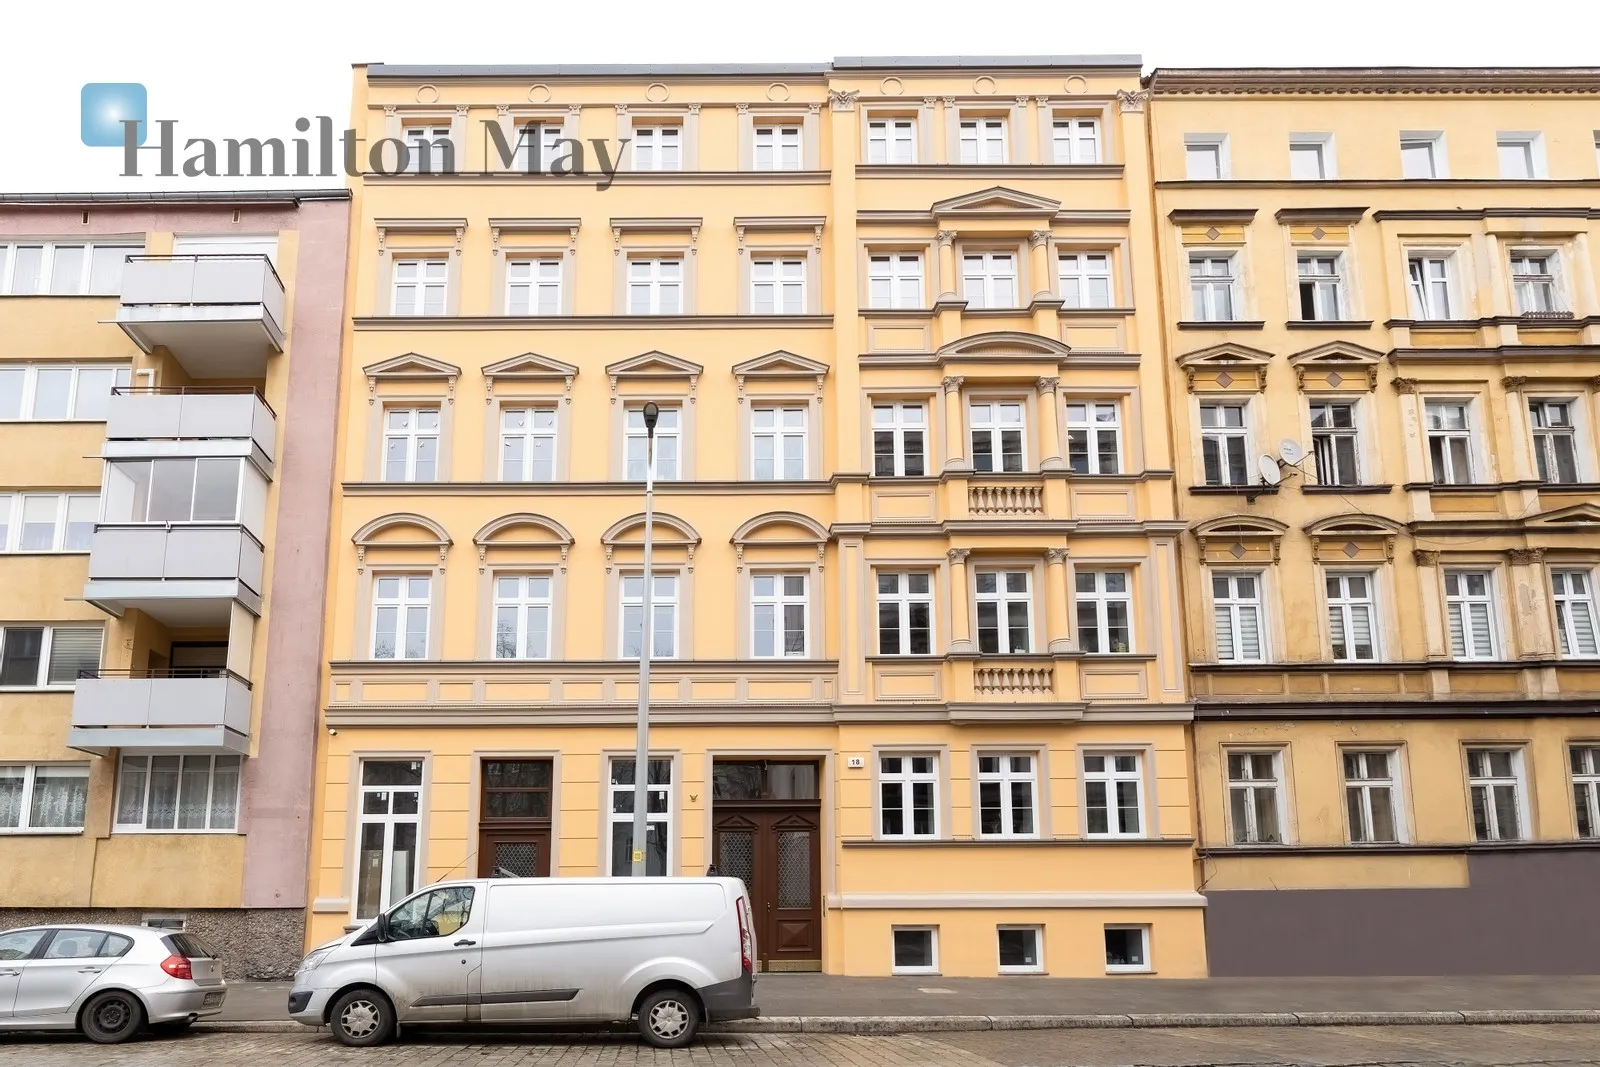 City: Wrocław Street: Jęczmienna Region: Stare Miasto Distance to centre: 1.31 km Level: 2 Price: 434980.53 PLN Bedrooms: 0 Bathrooms: 1 Size: 30m2 Price/m2: 14499 PLN